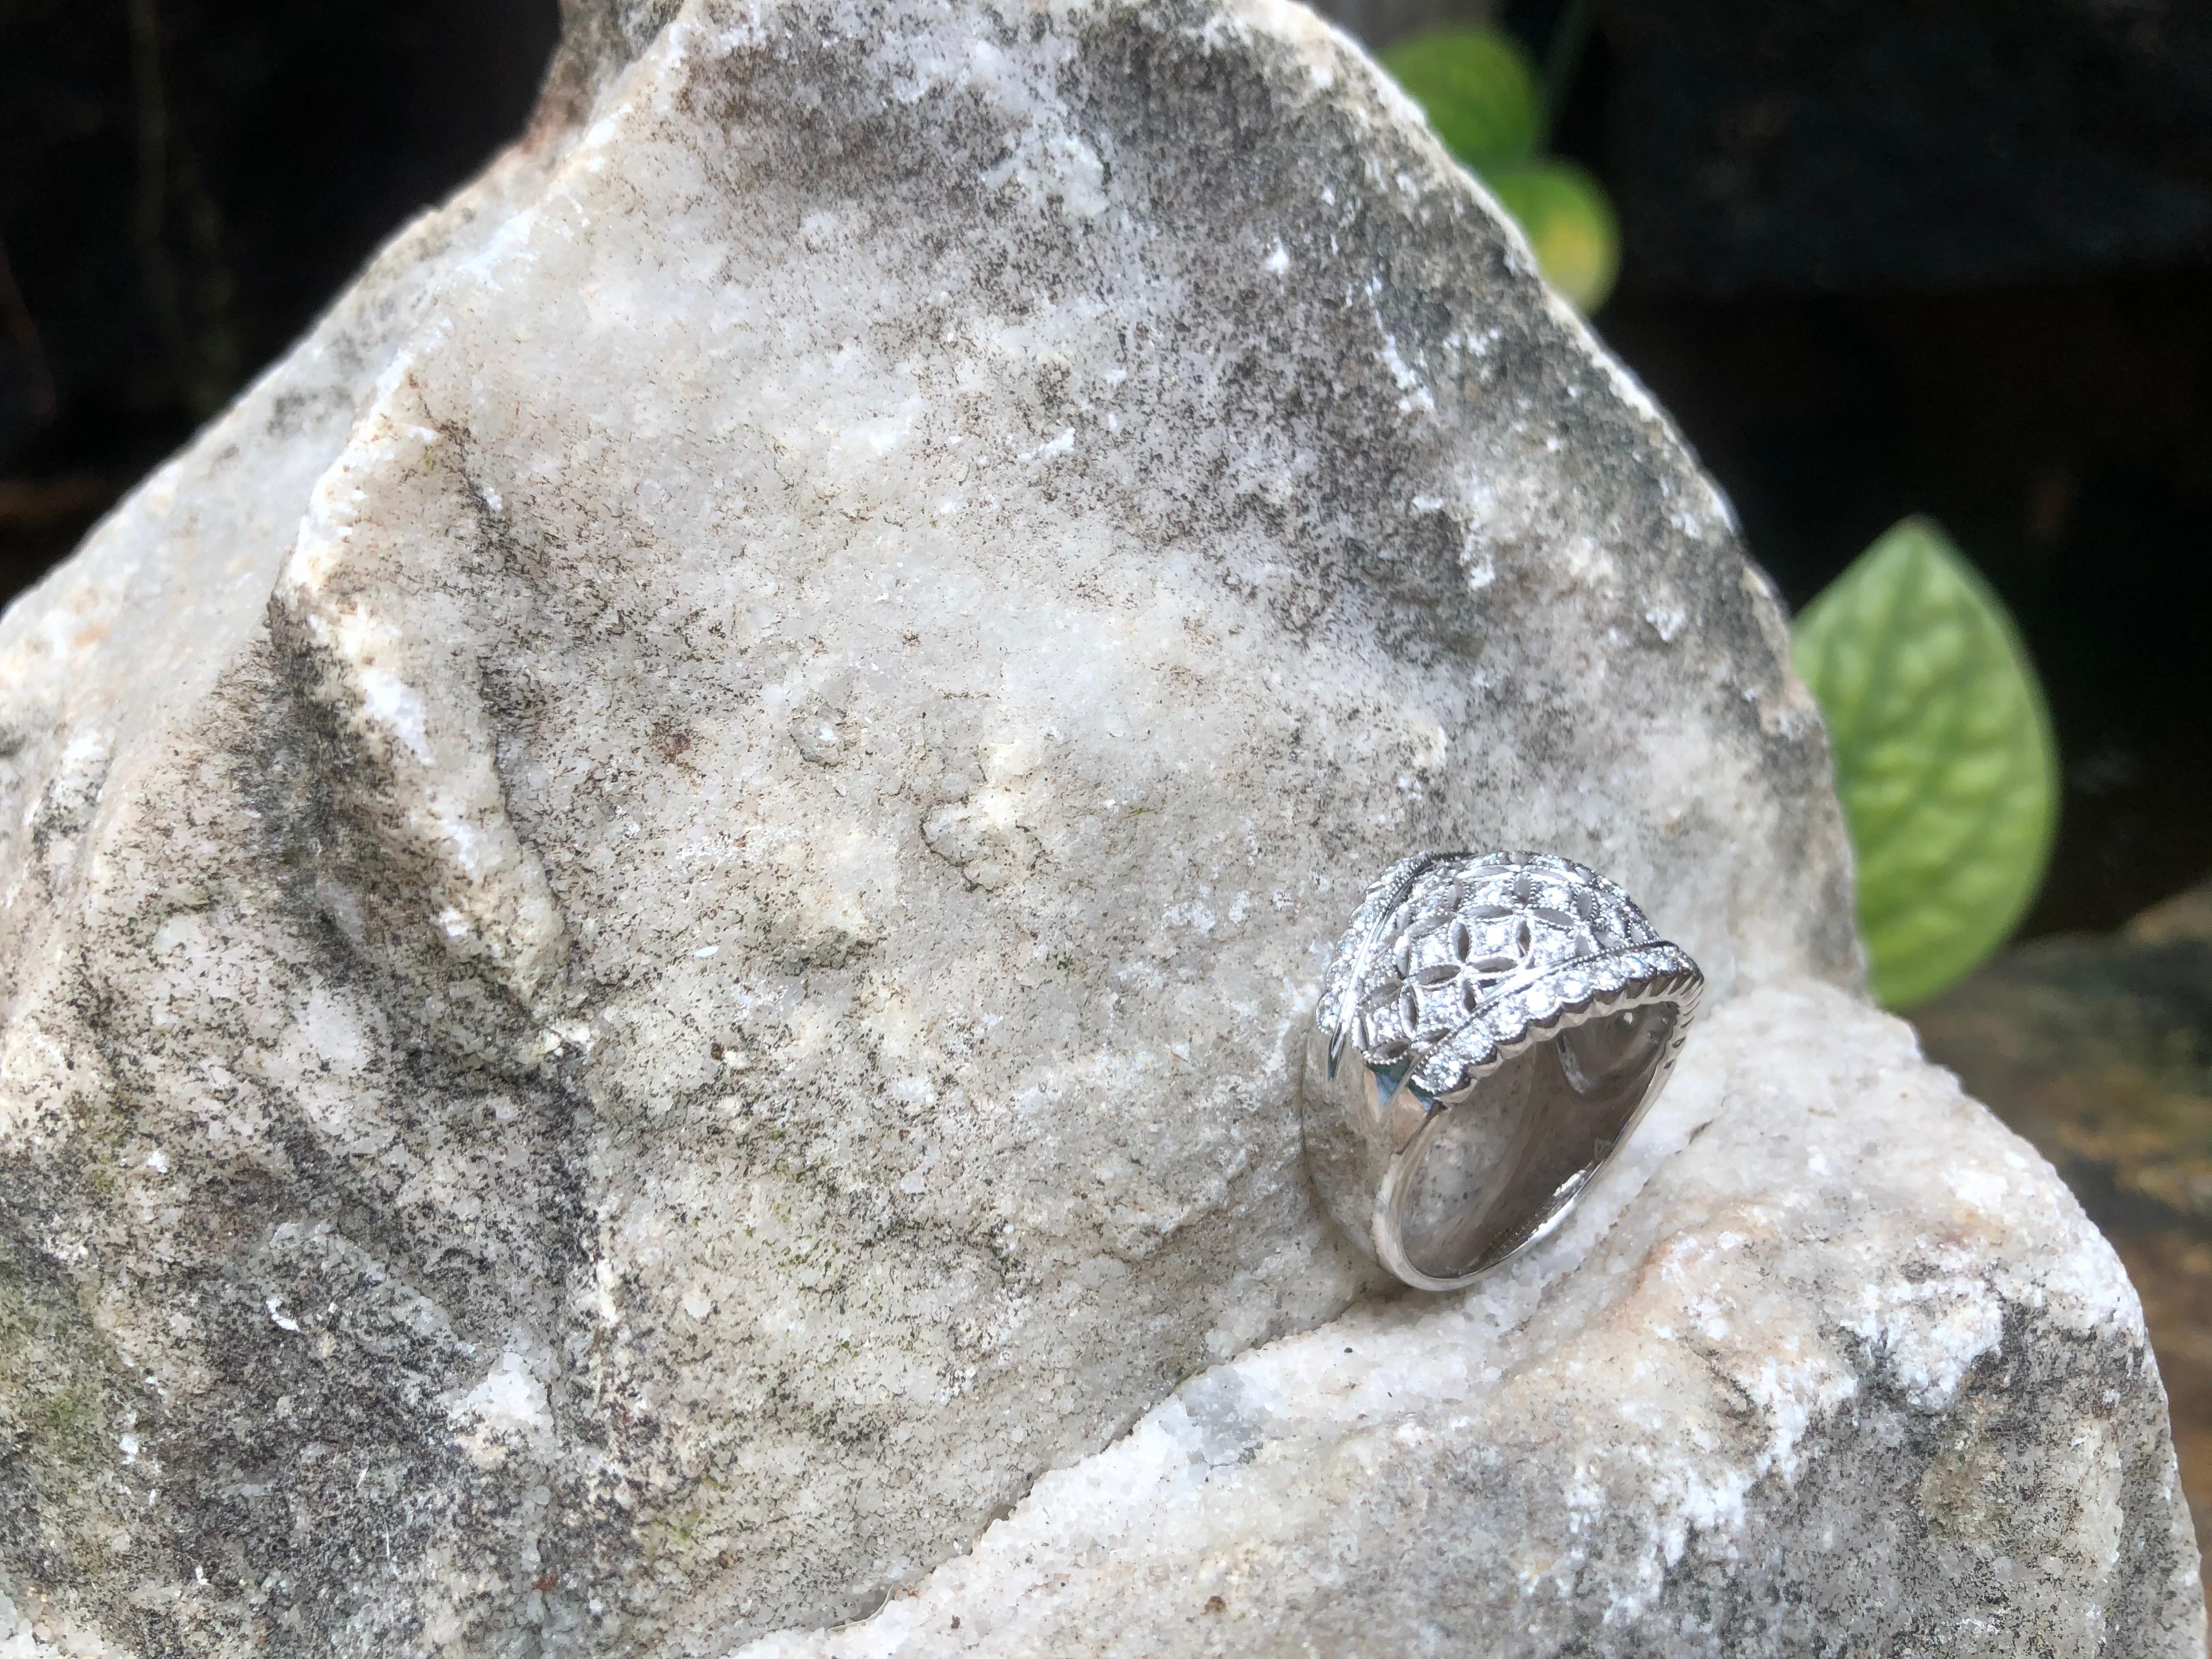 Diamond Ring Set in 18 Karat White Gold Settings For Sale 7